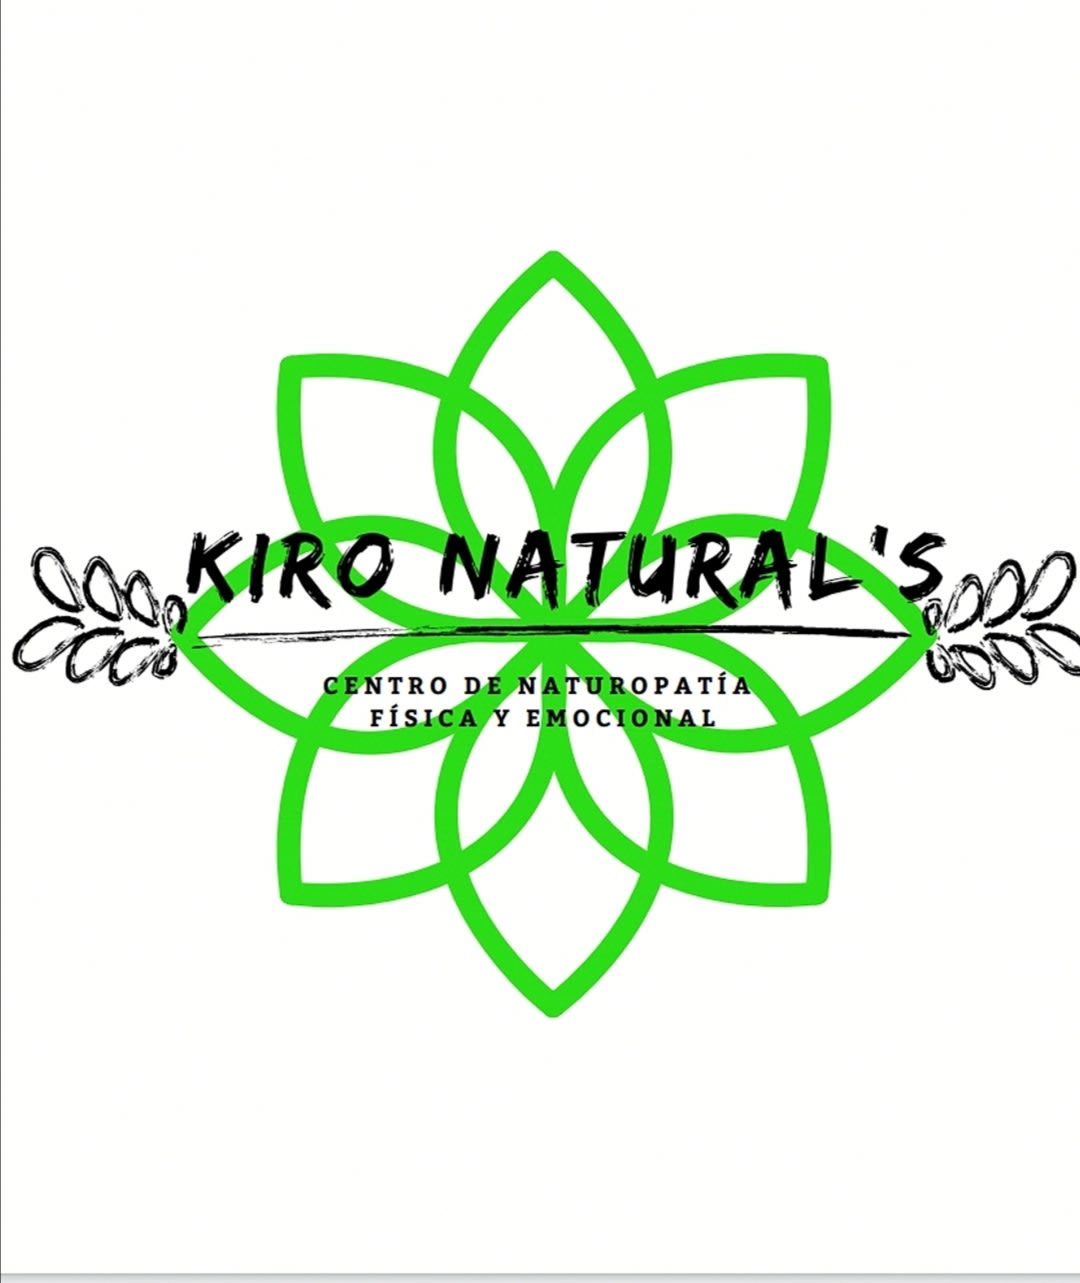 Kiro Natural's